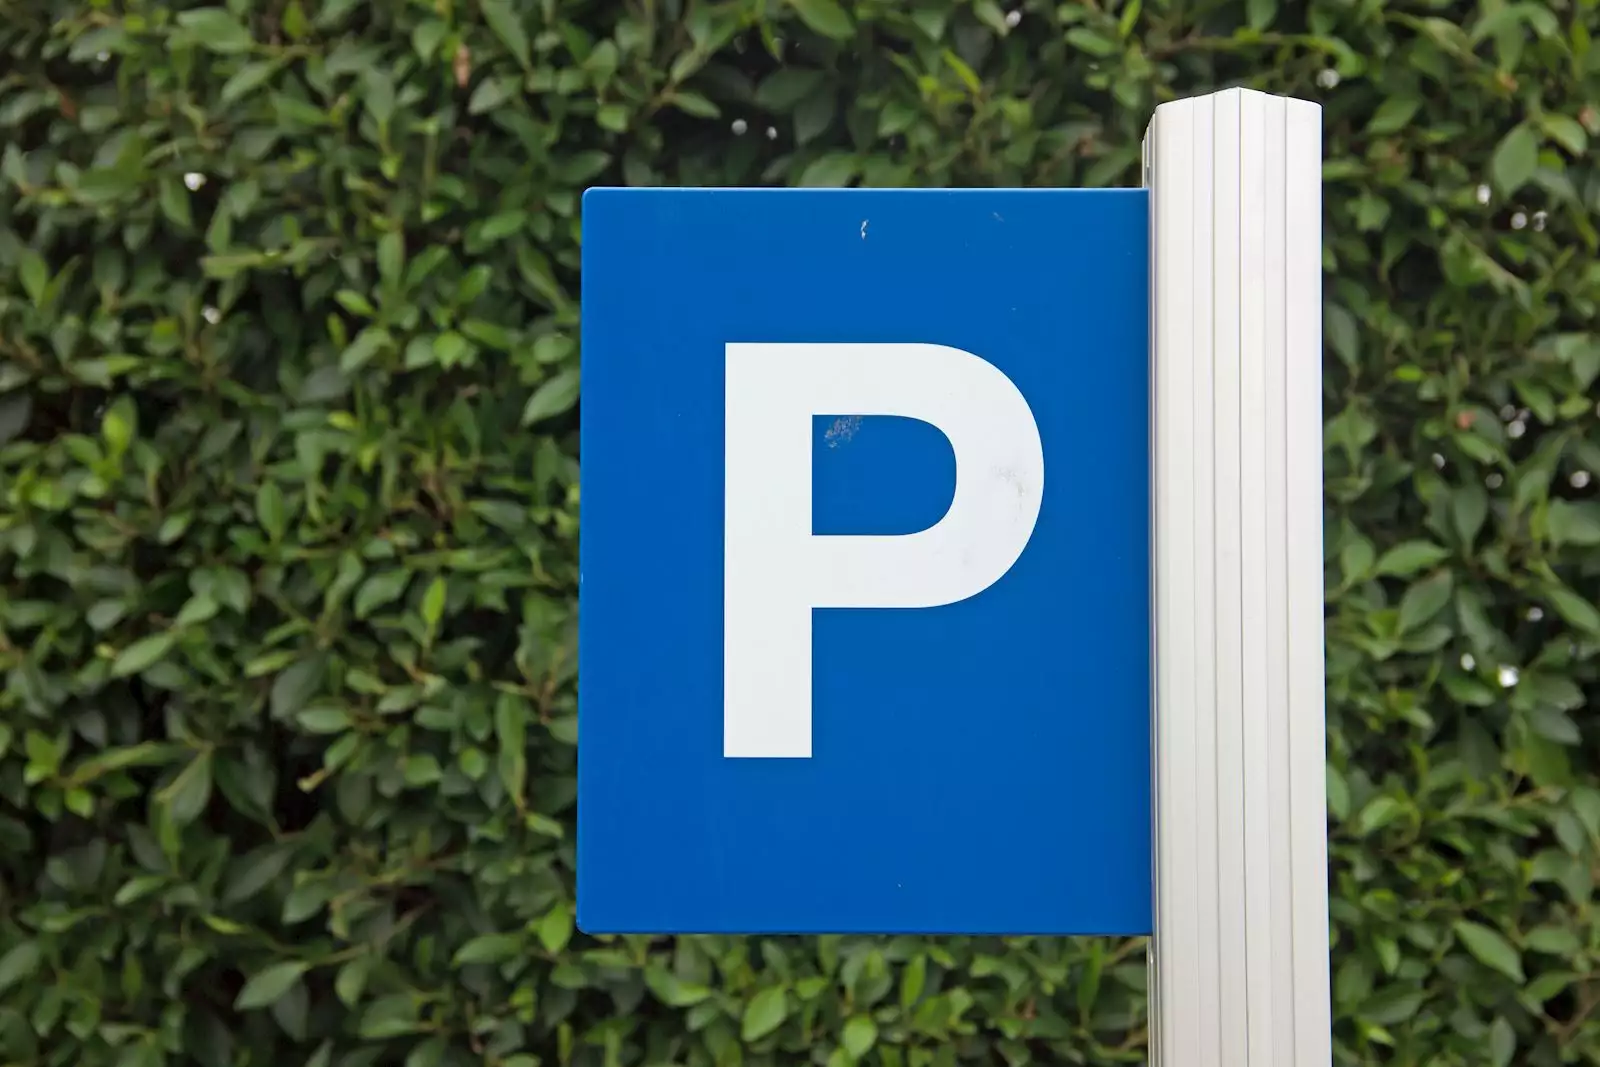 Nove cene parking usluga u Beogradu!